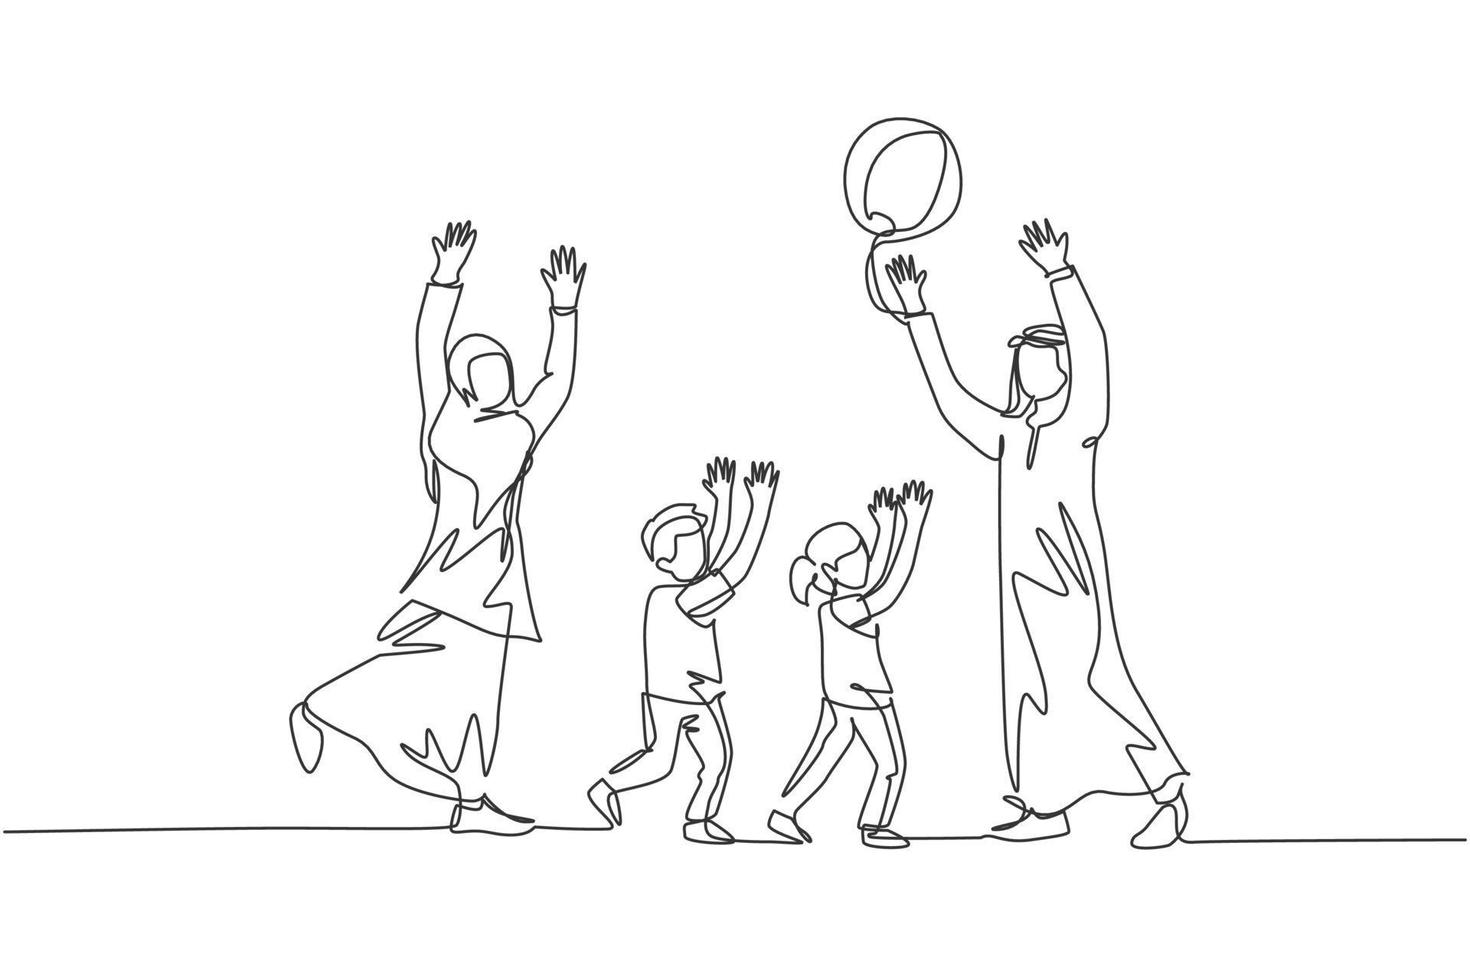 um desenho de linha contínua do jovem casal árabe jogando bola junto com a filha e o filho. conceito de família parental muçulmana islâmica feliz. ilustração em vetor desenho desenho de linha única